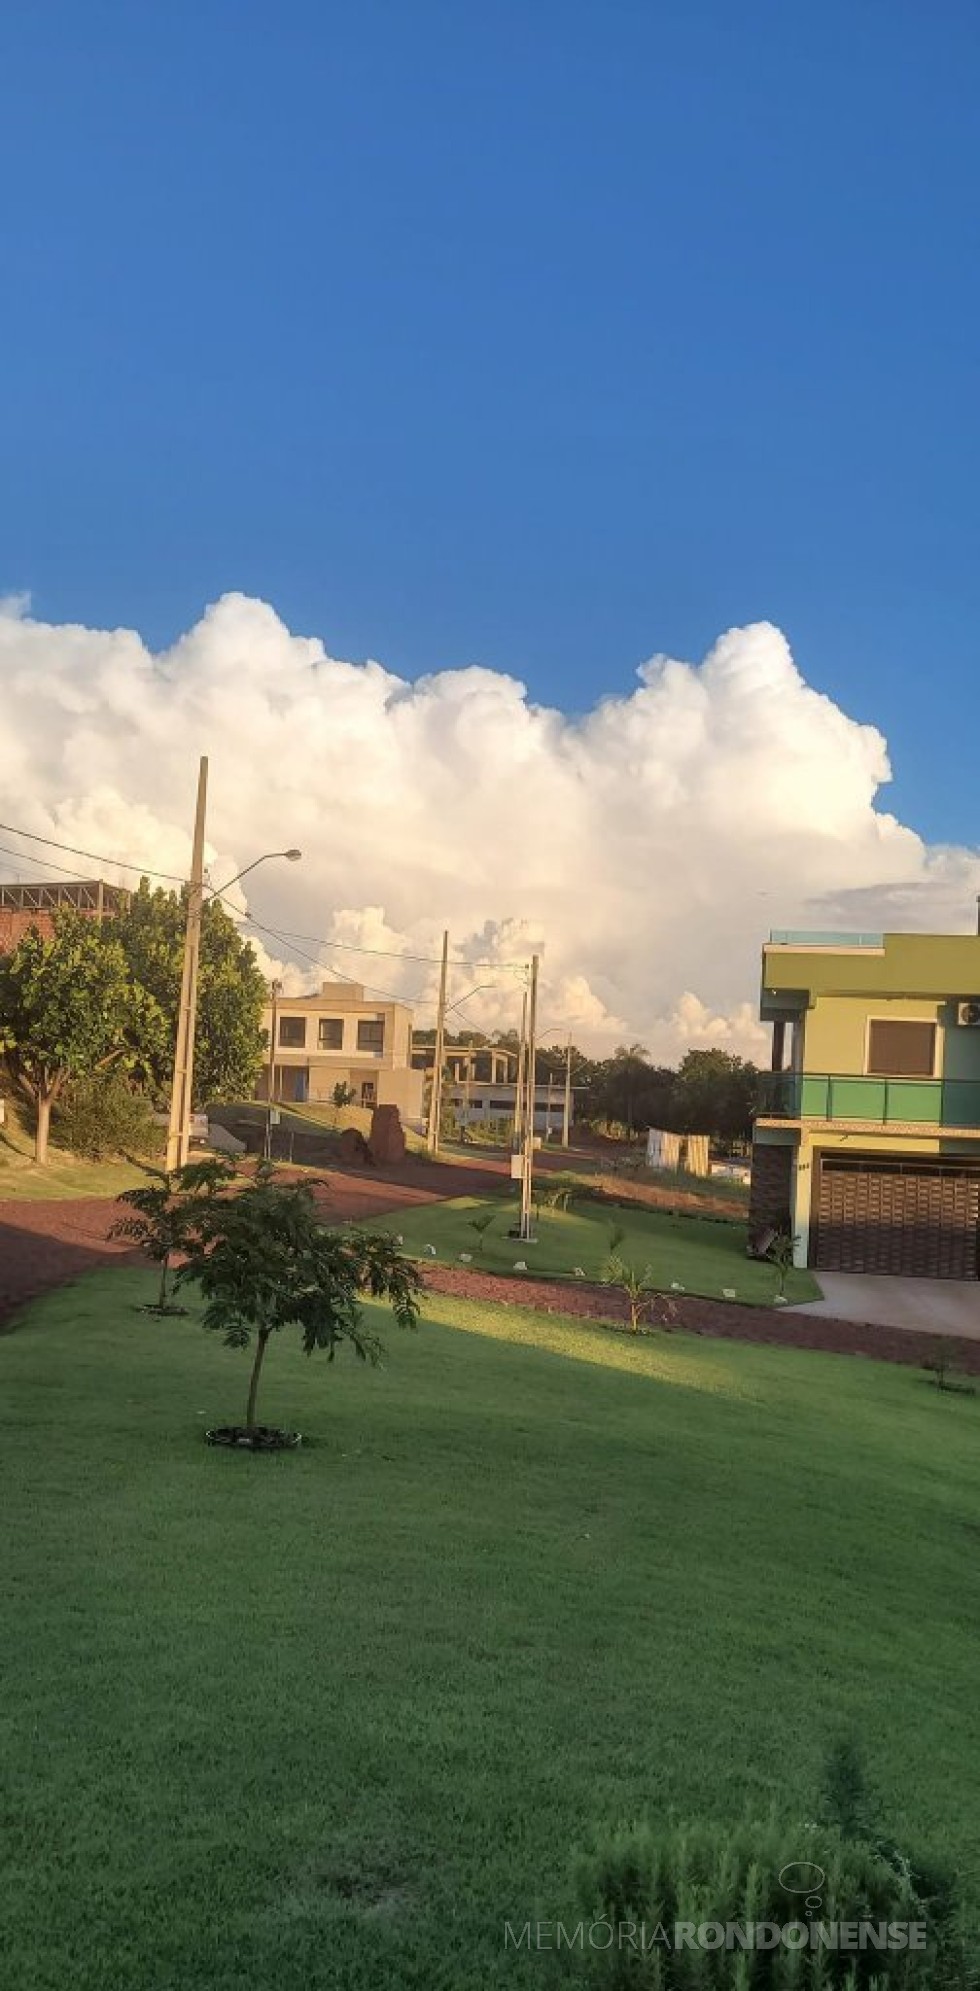 || Formação de nuvens tipo cumulonimbus, a leste do município de Marechal Cândido Rondon, em 20 de janeiro de 2023. 
Imagem clicada pela rondonense Ilda Bet a partir do Clube Náutico, em Porto Mendes. - FOTO 28 - 